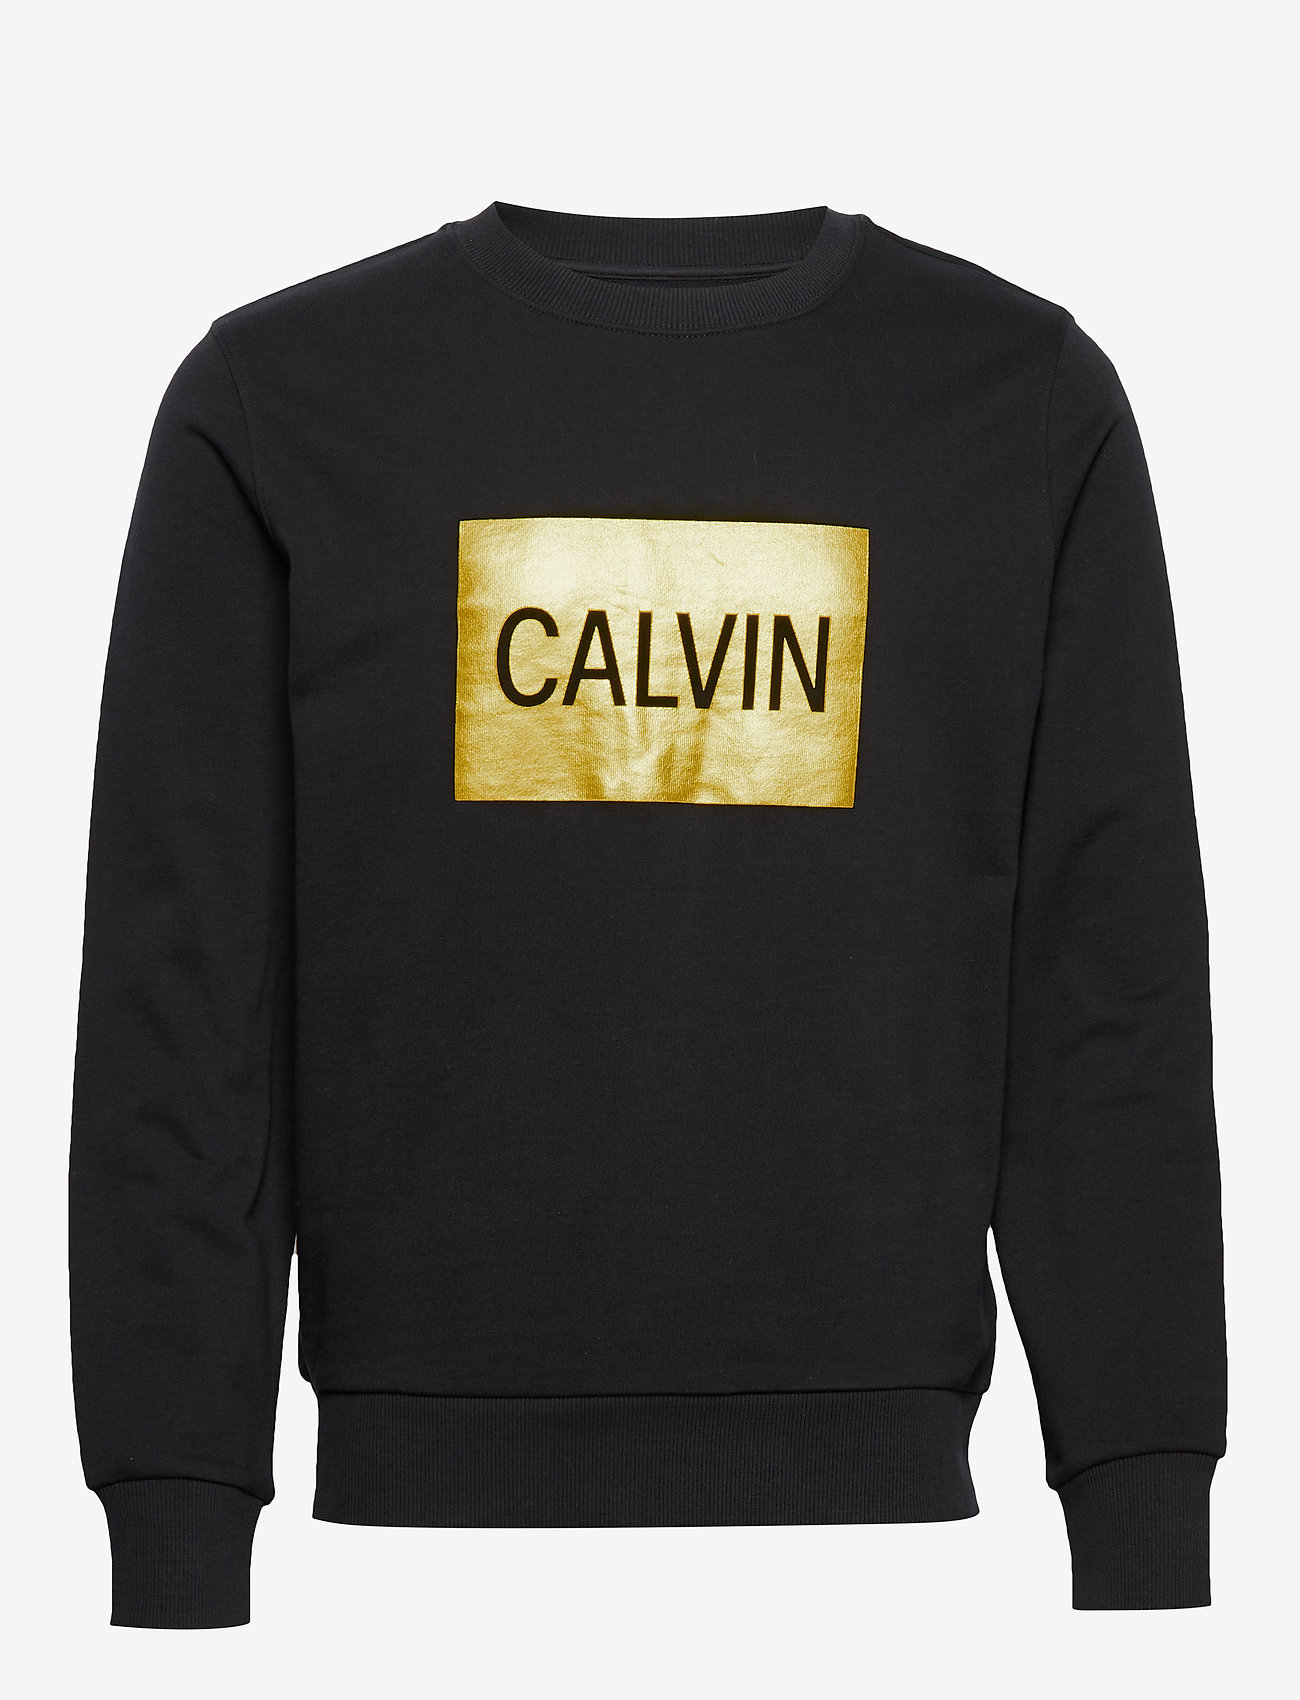 calvin klein black crew neck sweatshirt